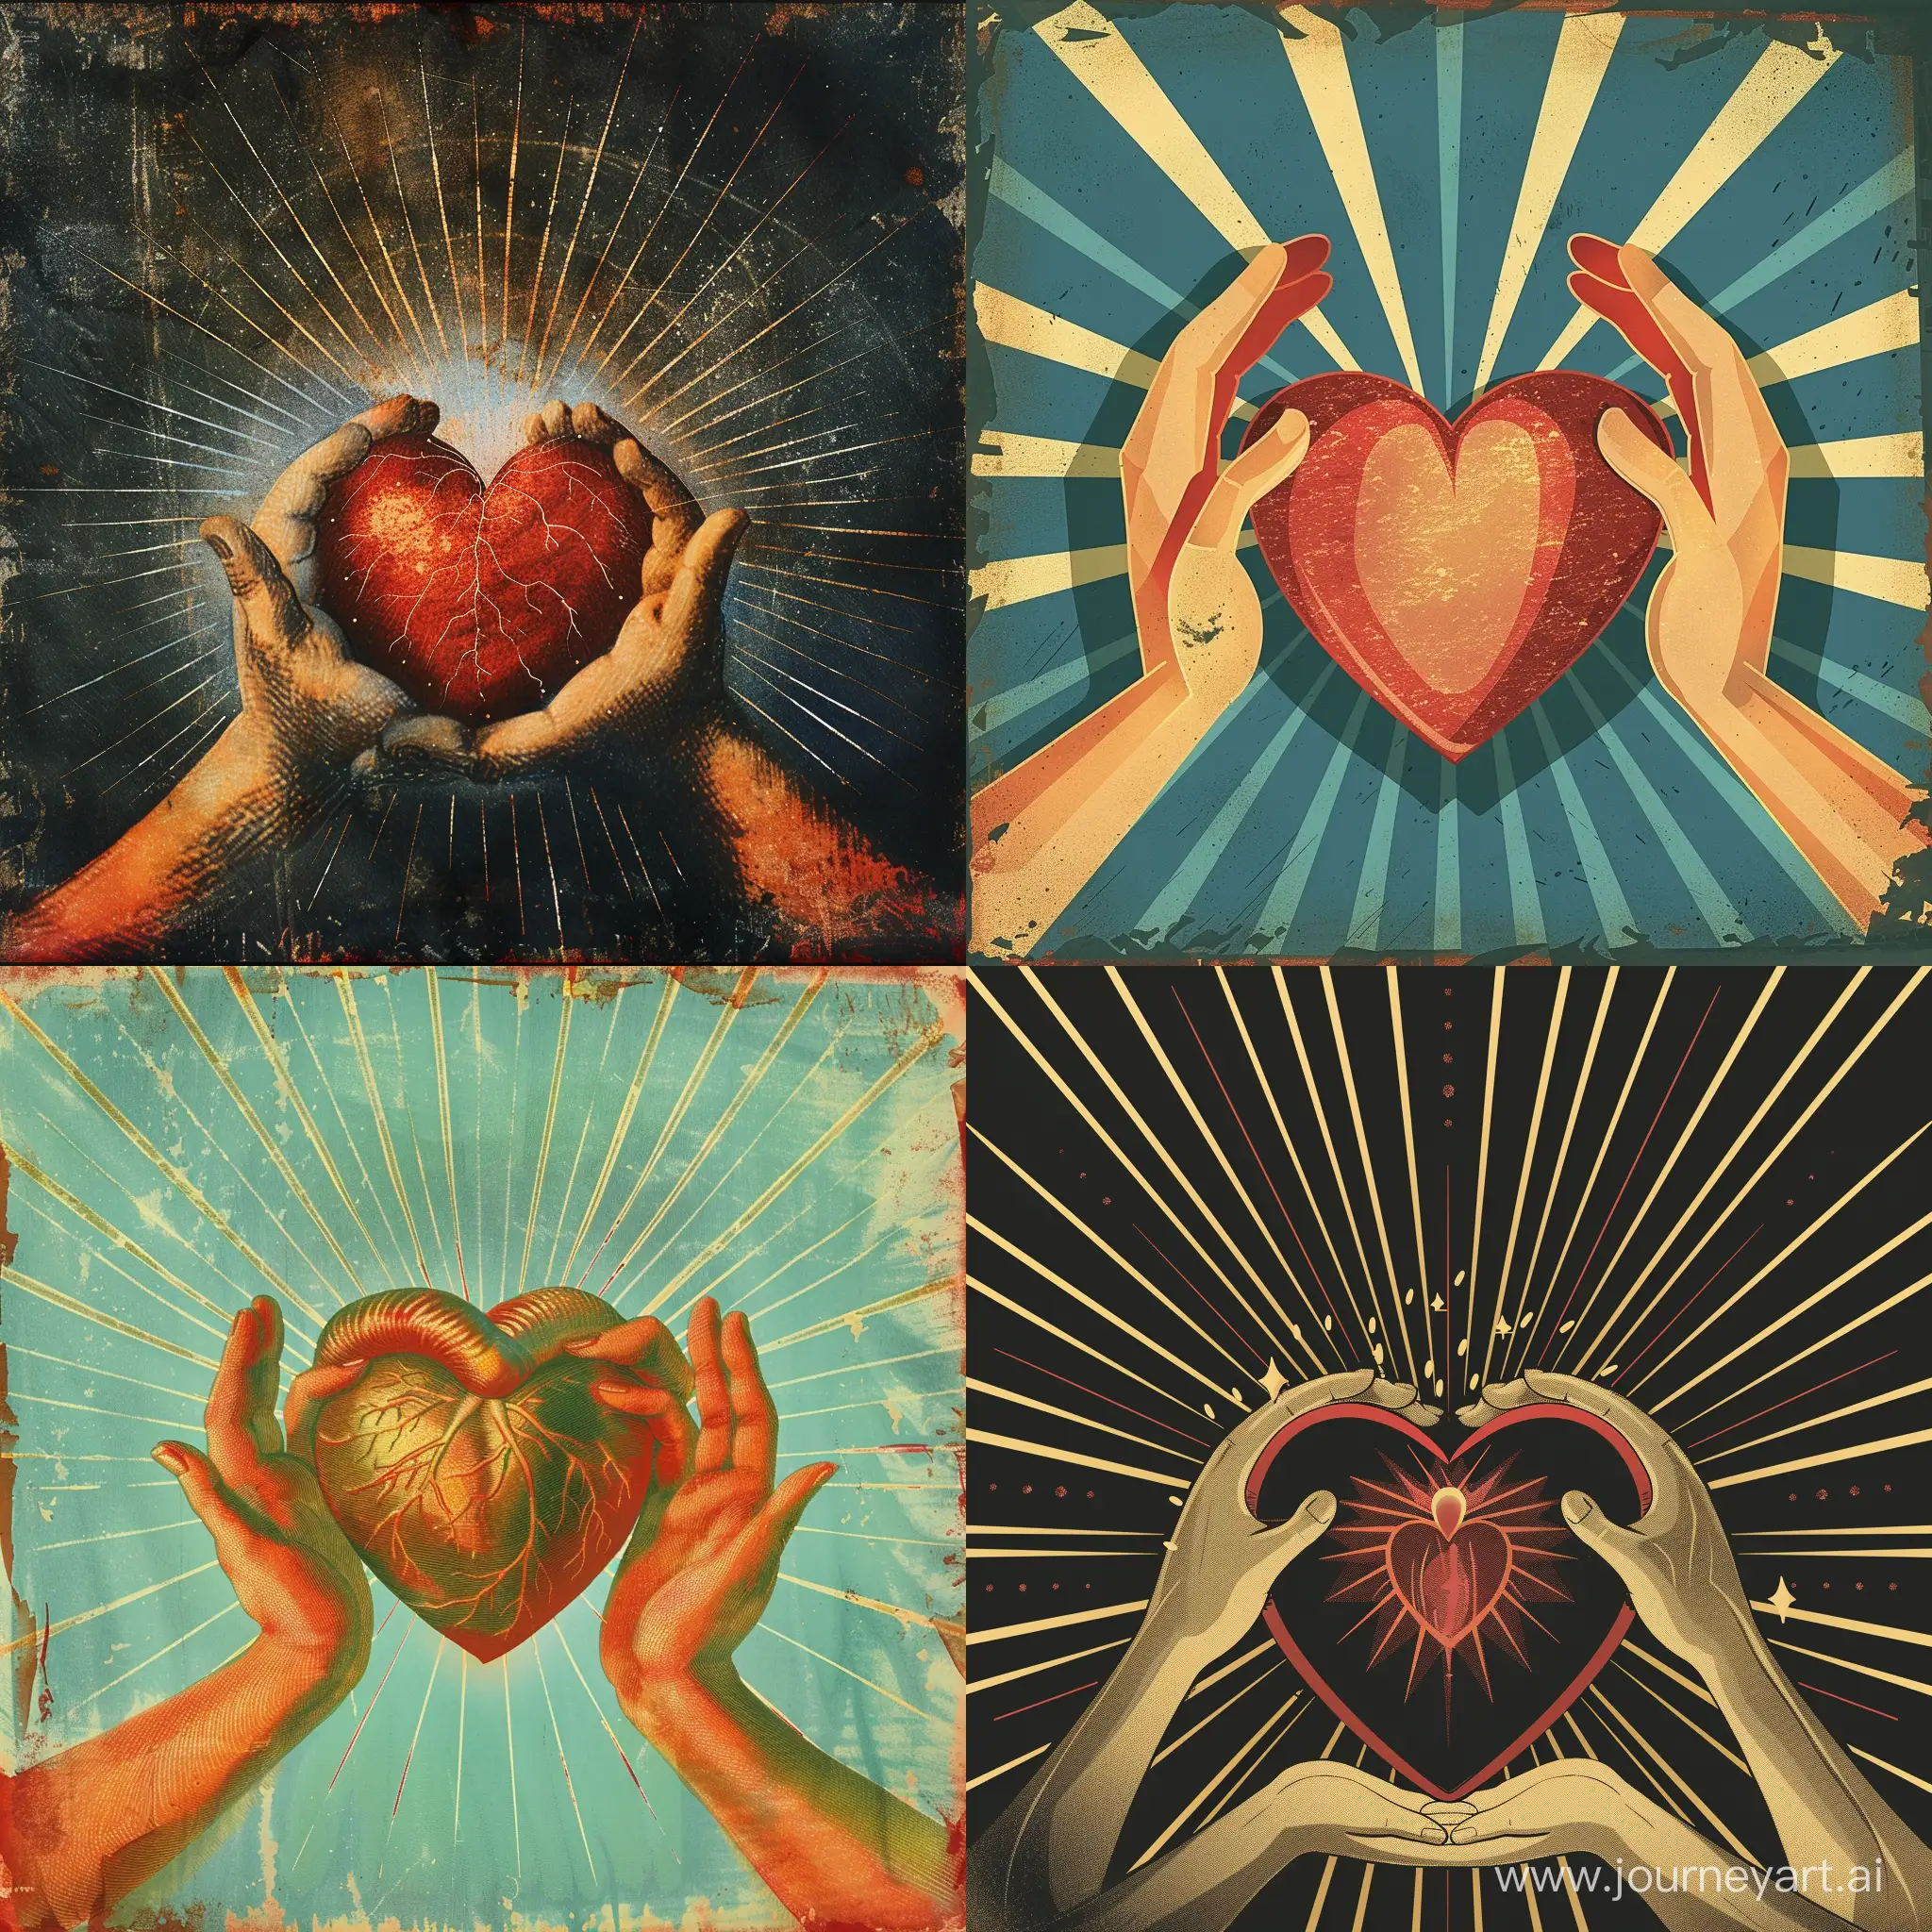 Öffne dein Herz für Liebe und Mitgefühl. Sie sind die größten Geschenke, die du geben und empfangen kannst."
Bildvorschlag: Eine Darstellung von Händen, die ein Herz umfassen, während eine Strahlung von Licht und Liebe aus ihnen hervorgeht, um die Idee von Offenheit und Geben von Liebe darzustellen.